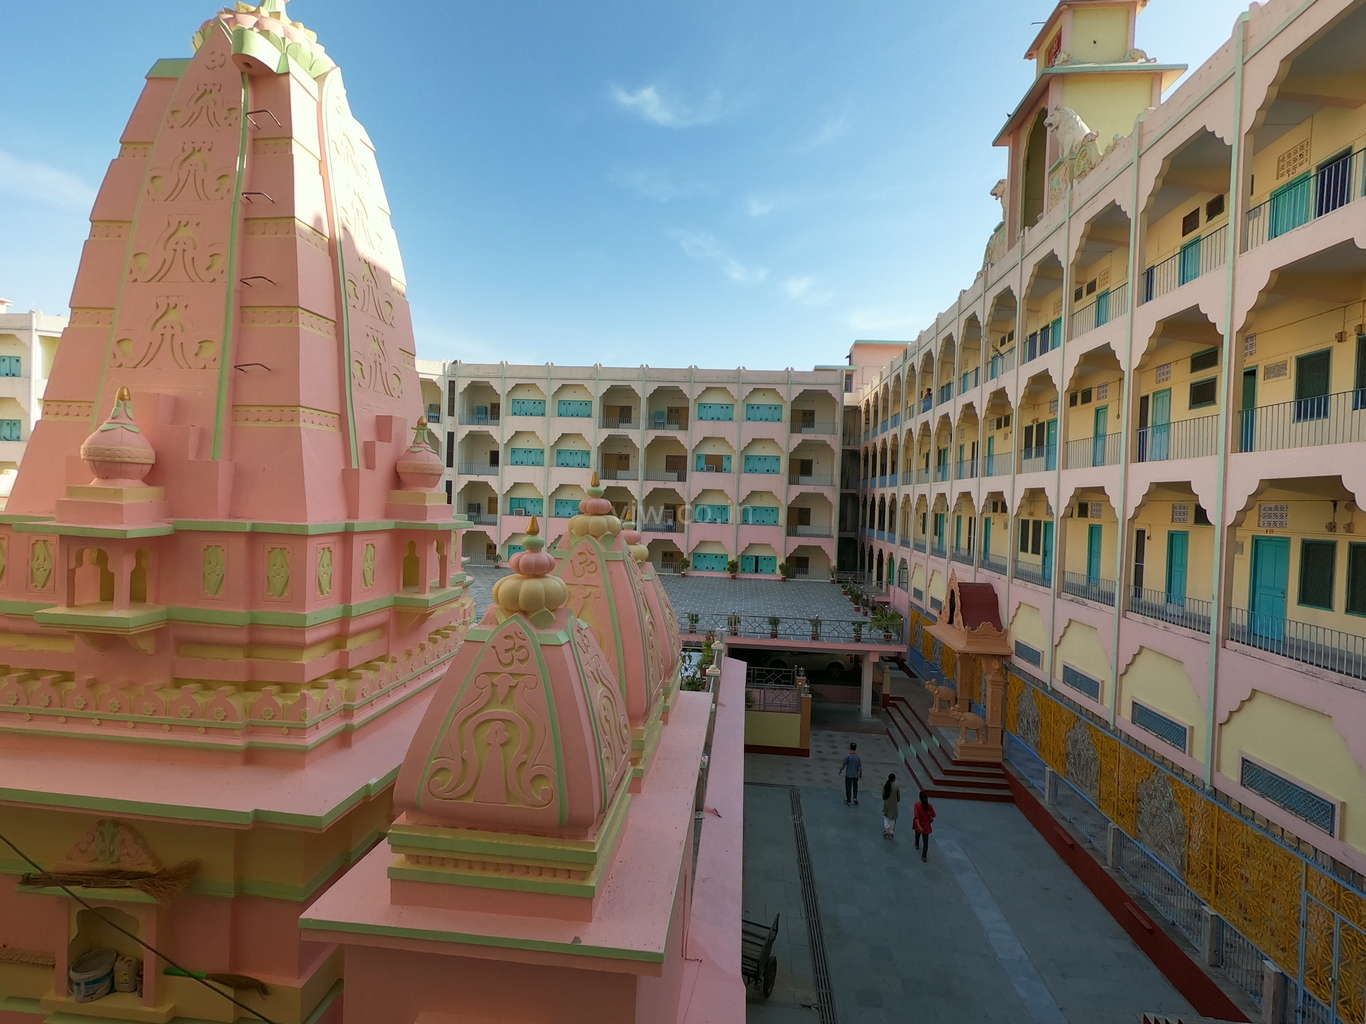 Shri Jai Ram ashram view